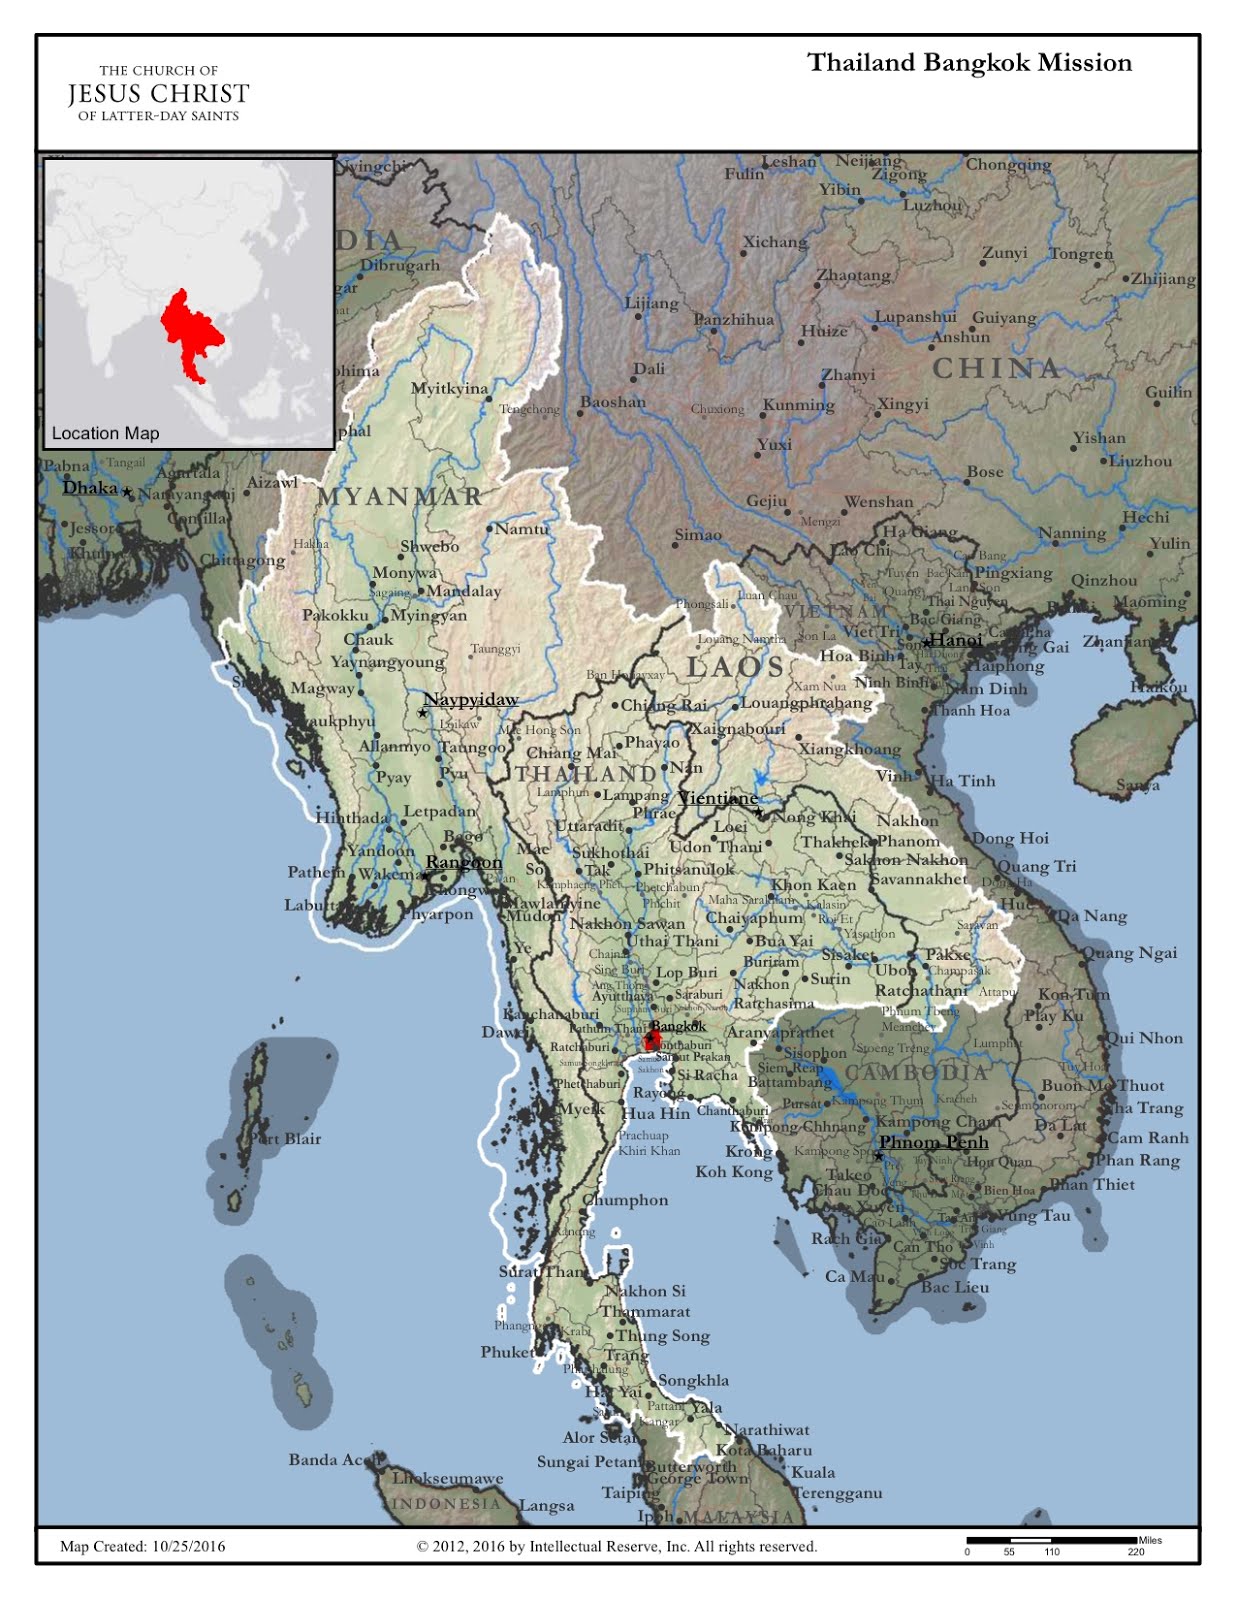 Thailand Bangkok Mission Map